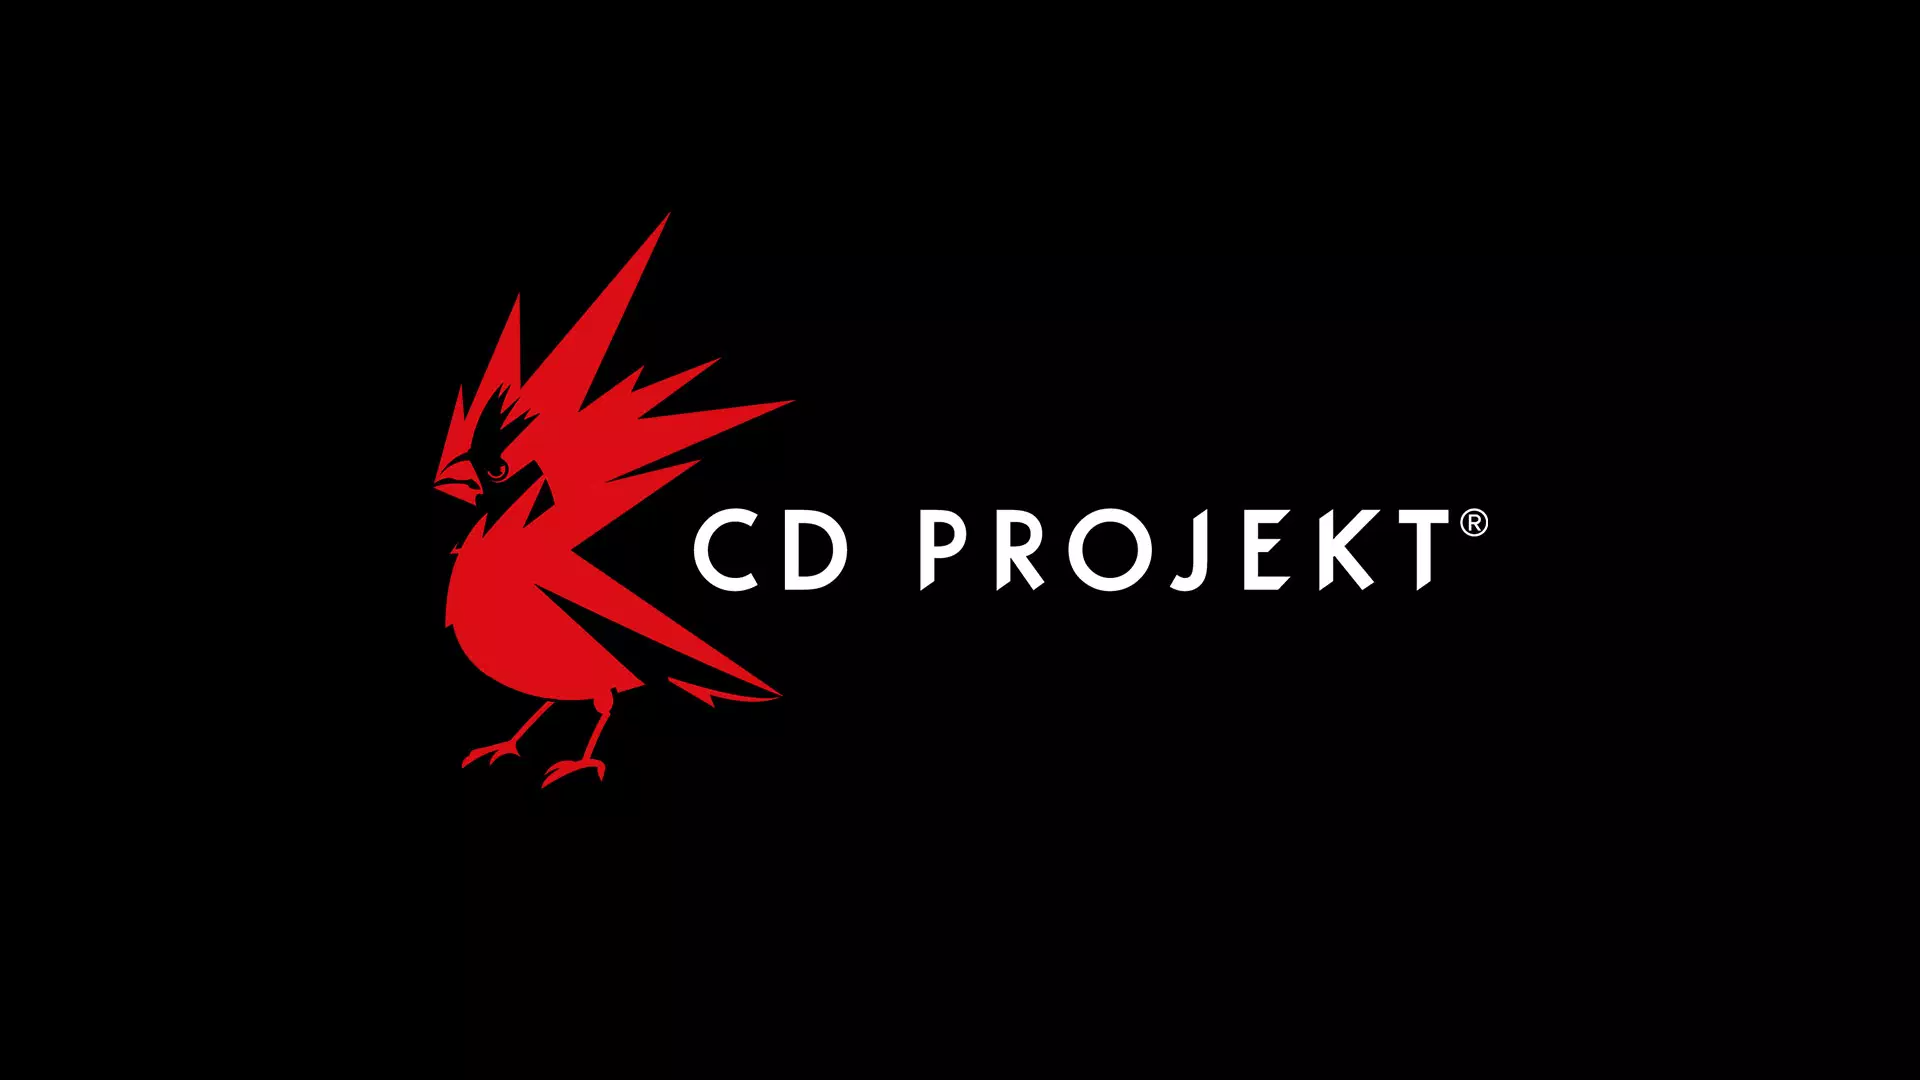 Imagen para El valor en bolsa de CD Projekt ha caído un 75% desde el lanzamiento de Cyberpunk 2077